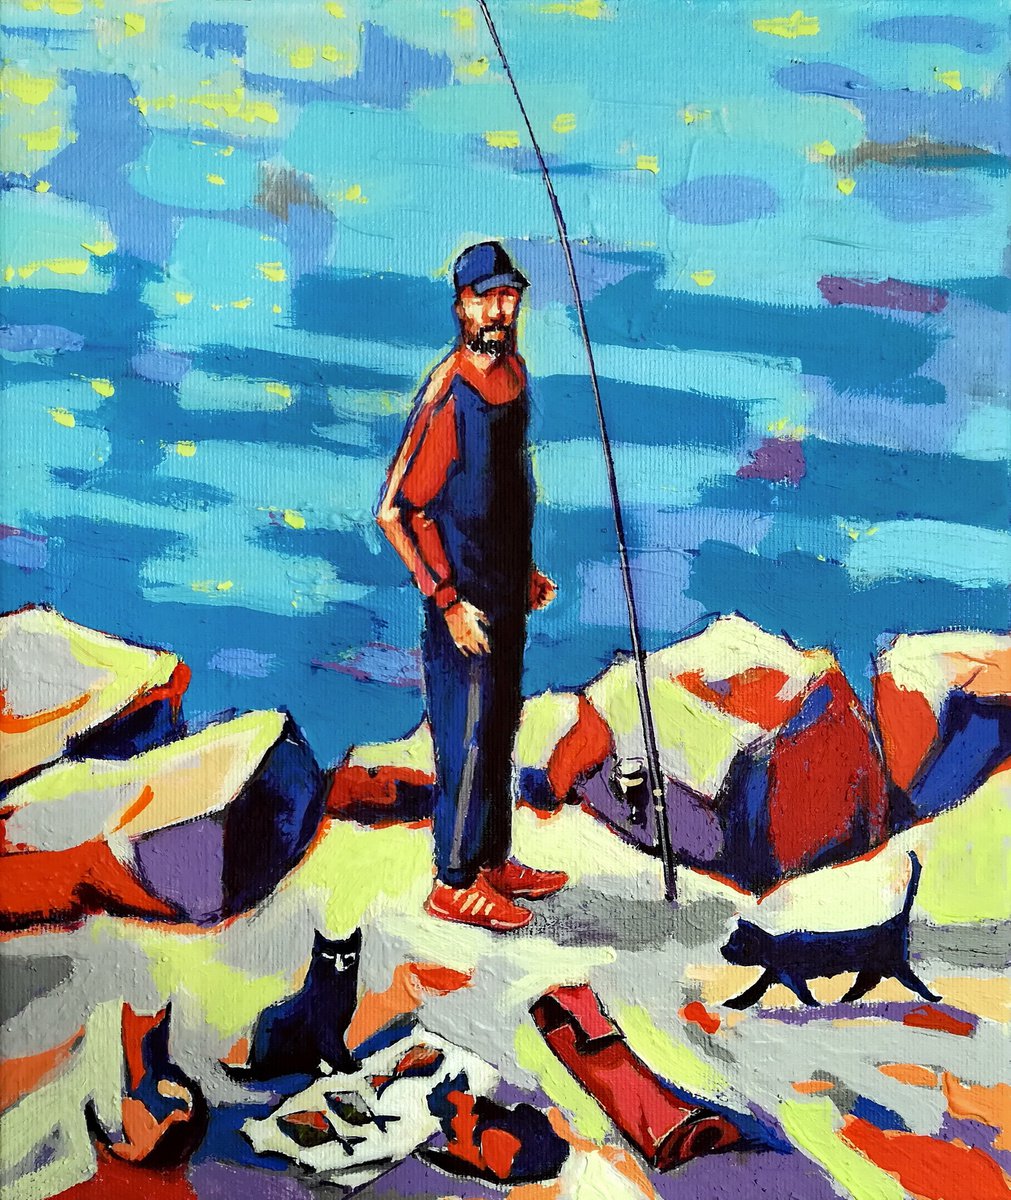 Fisherman and cats by Evgen Semenyuk